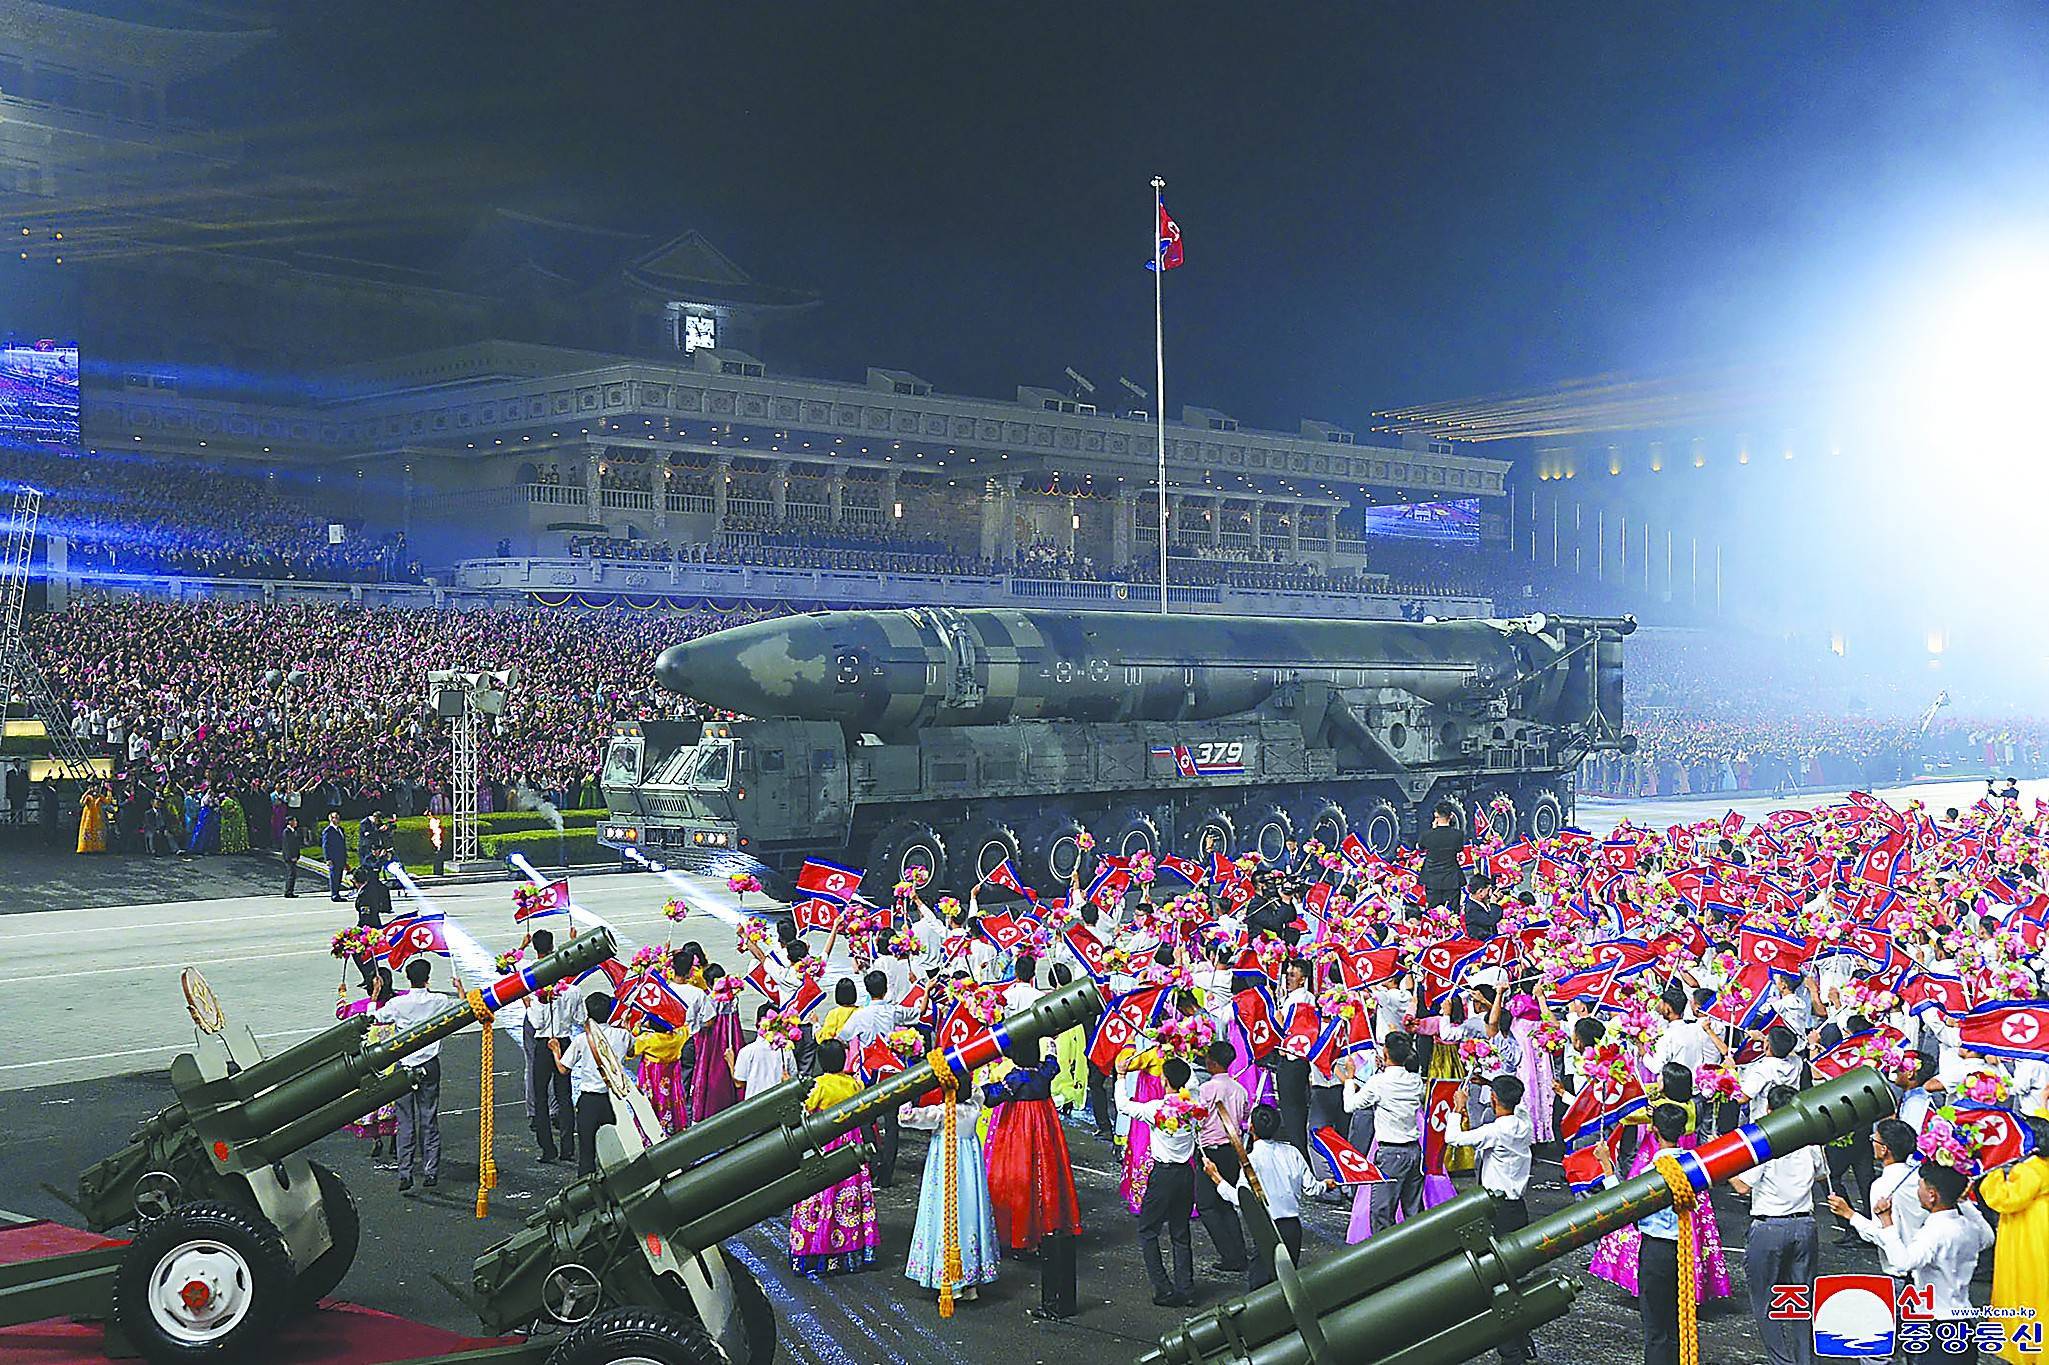 朝鲜阅兵亮出罕见新装备,韩媒很惊讶:这是哪来的?